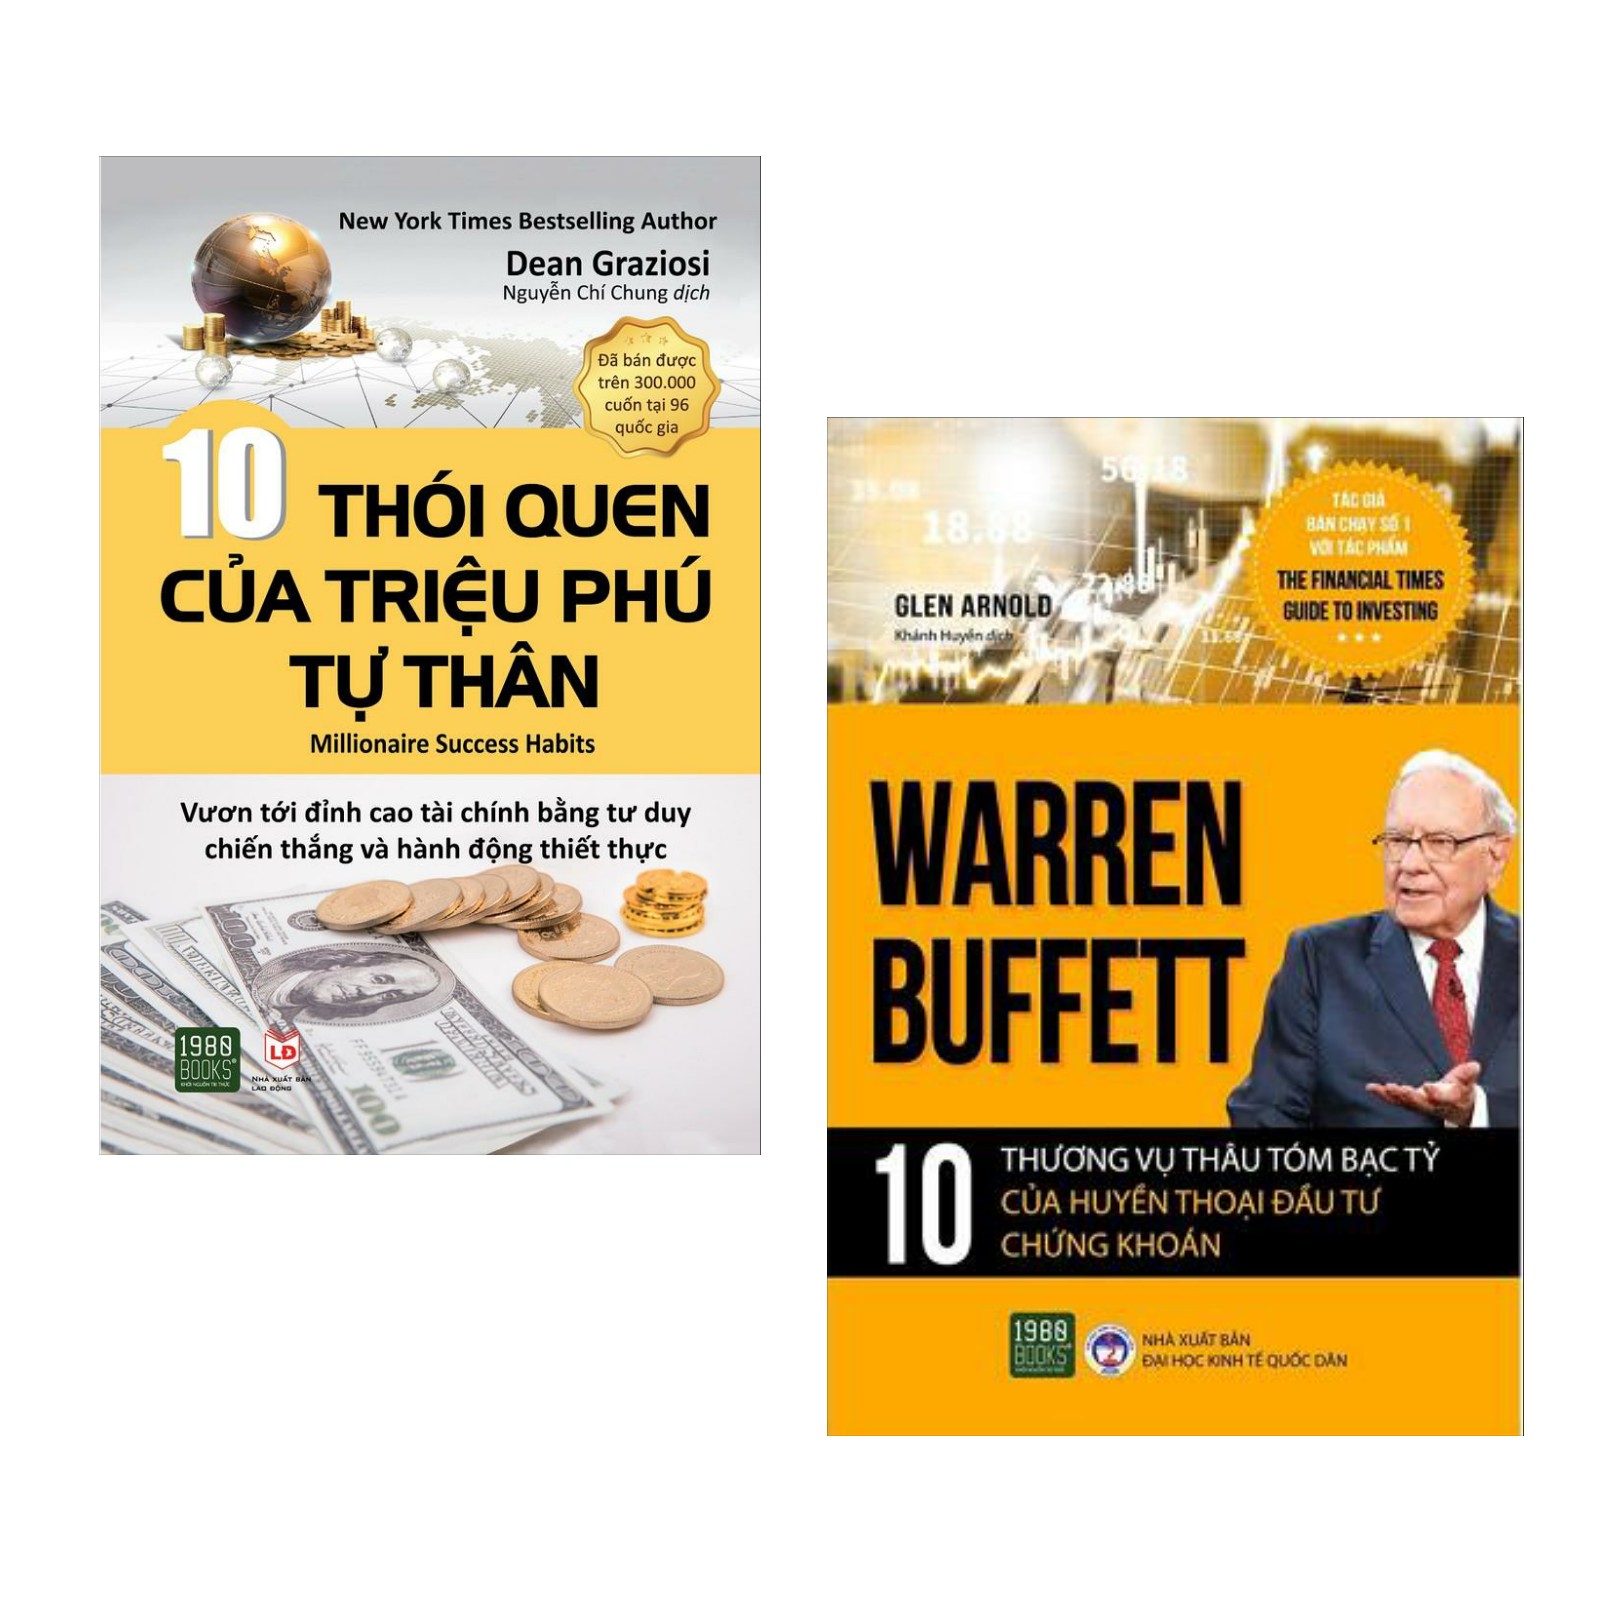 Combo: 10 Thói Quen Của Triệu Phú Tự Thân + Warren Buffett - 10 Thương Vụ Thâu Tóm Bạc Tỷ Của Huyền Thoại Đầu Tư Chứng Khoán